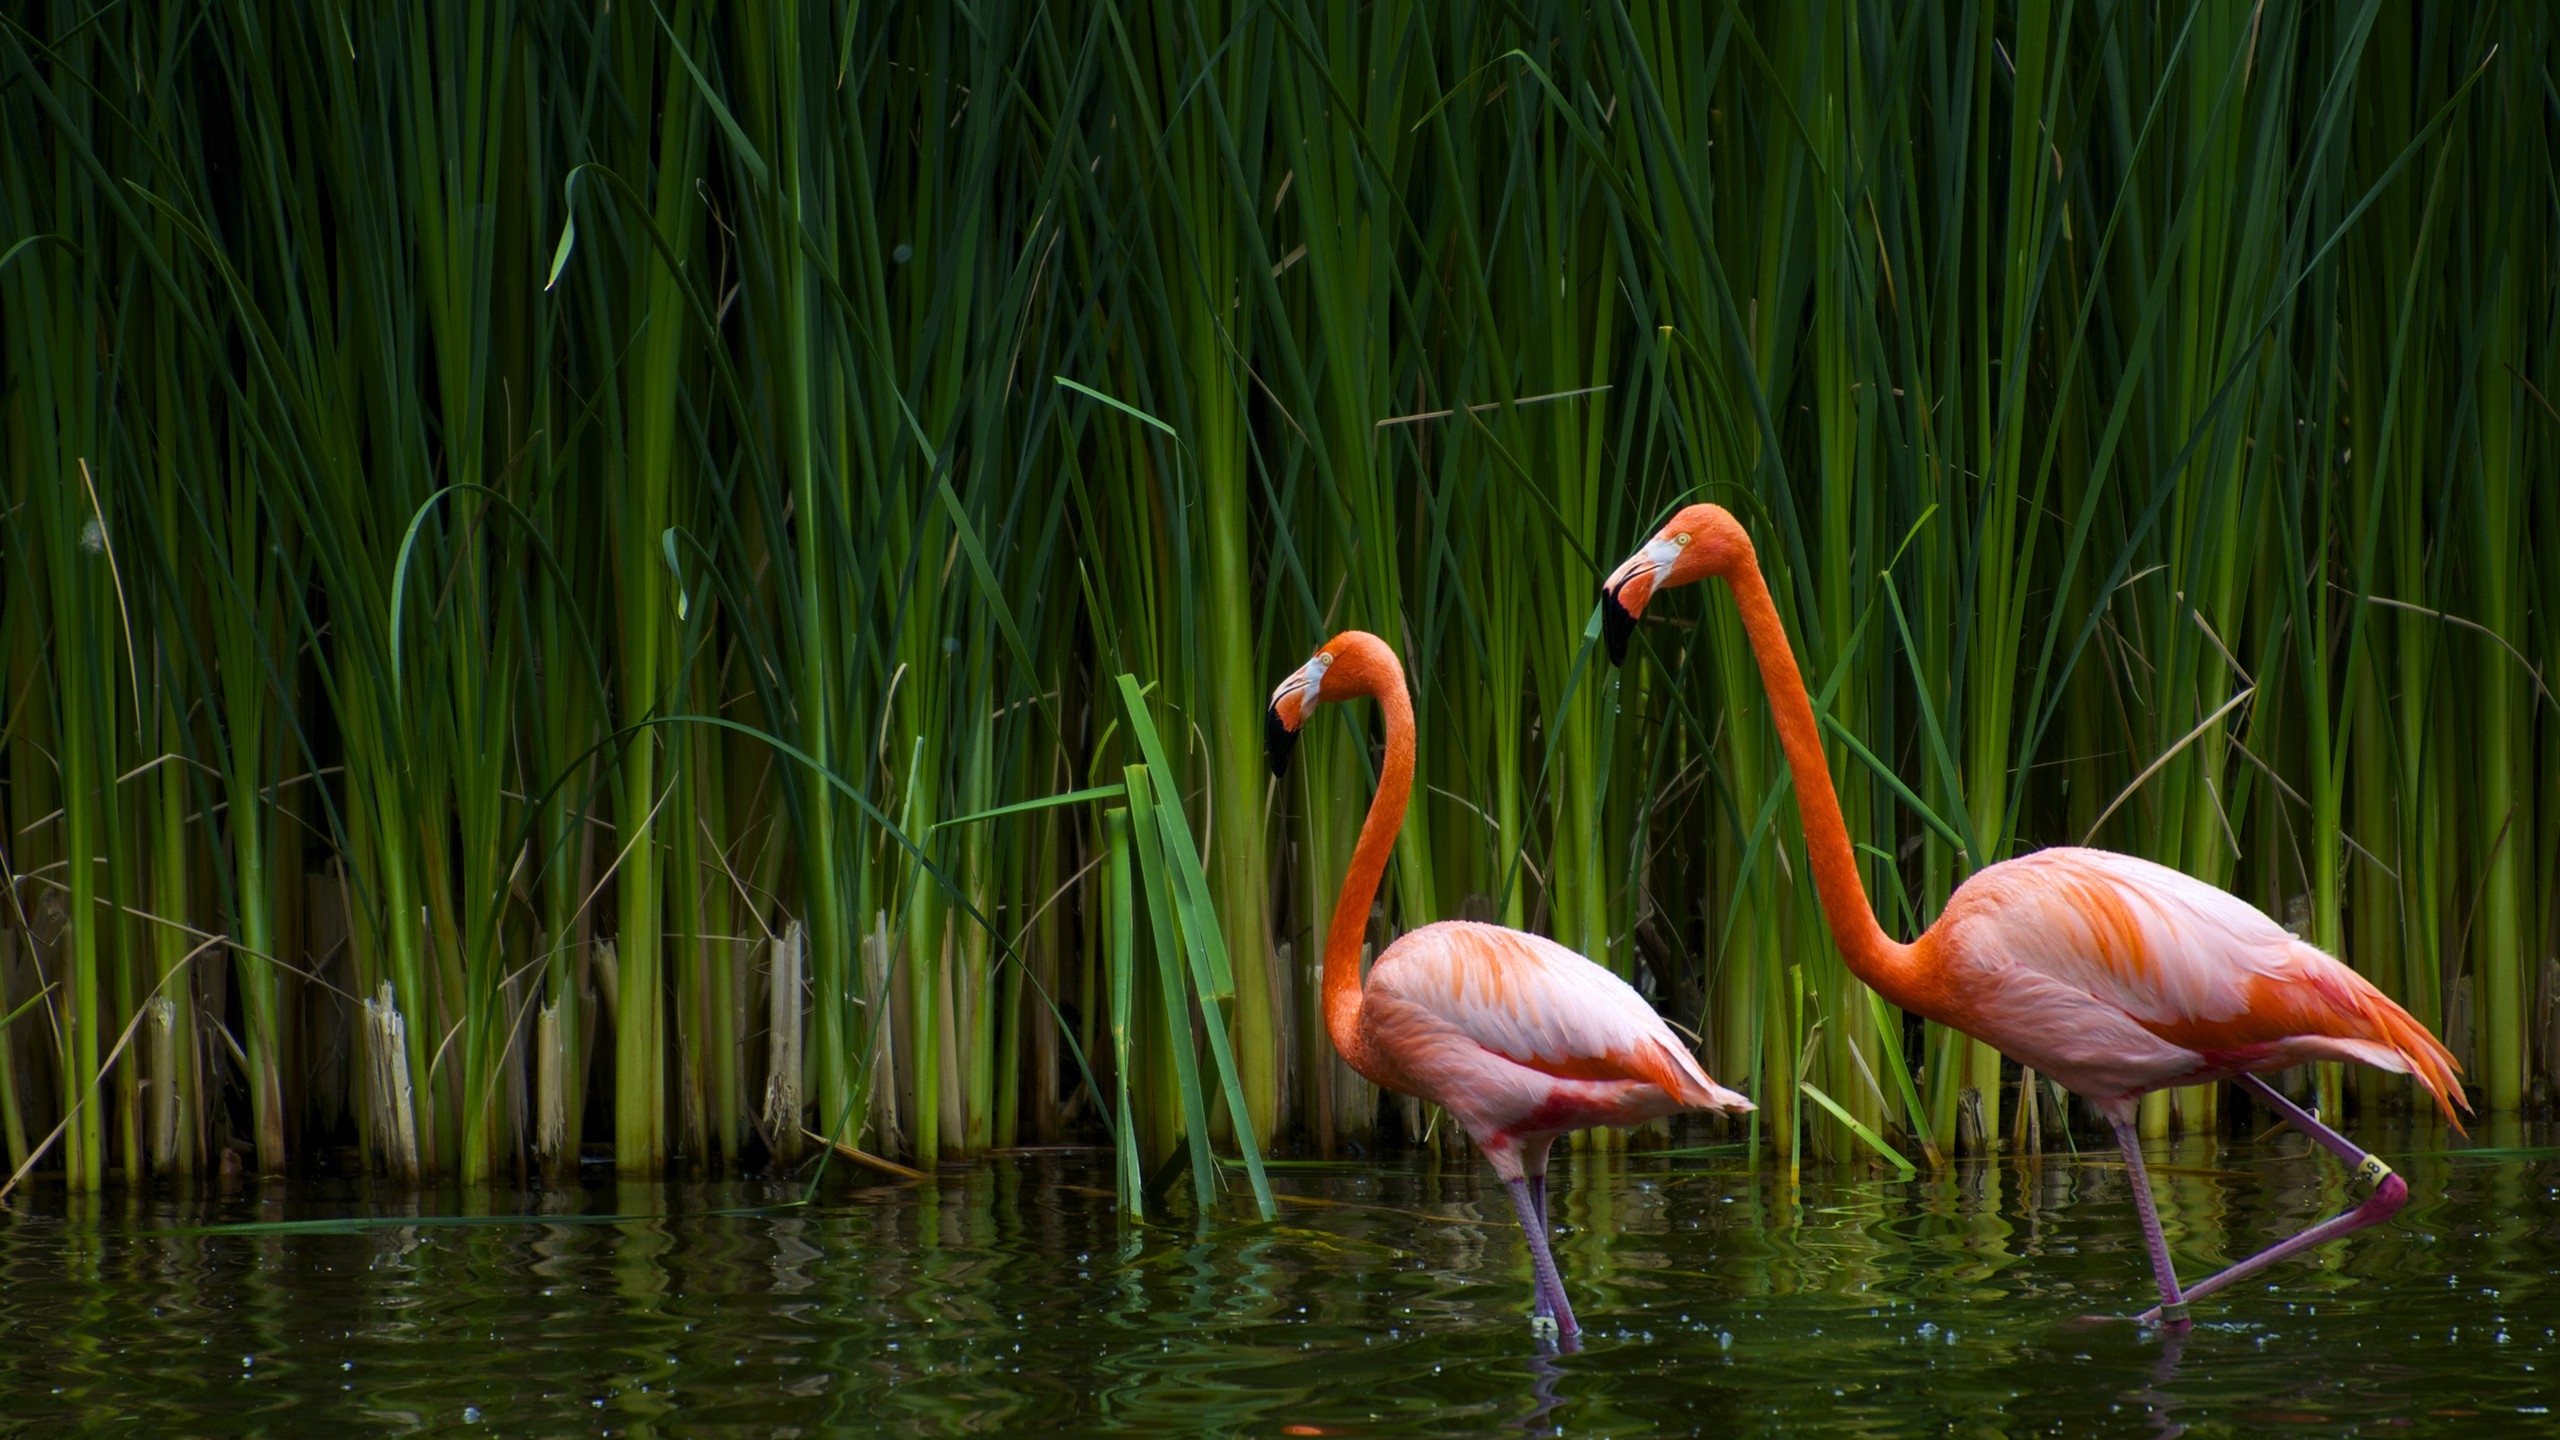 Flamingos in the lake Wallpaper